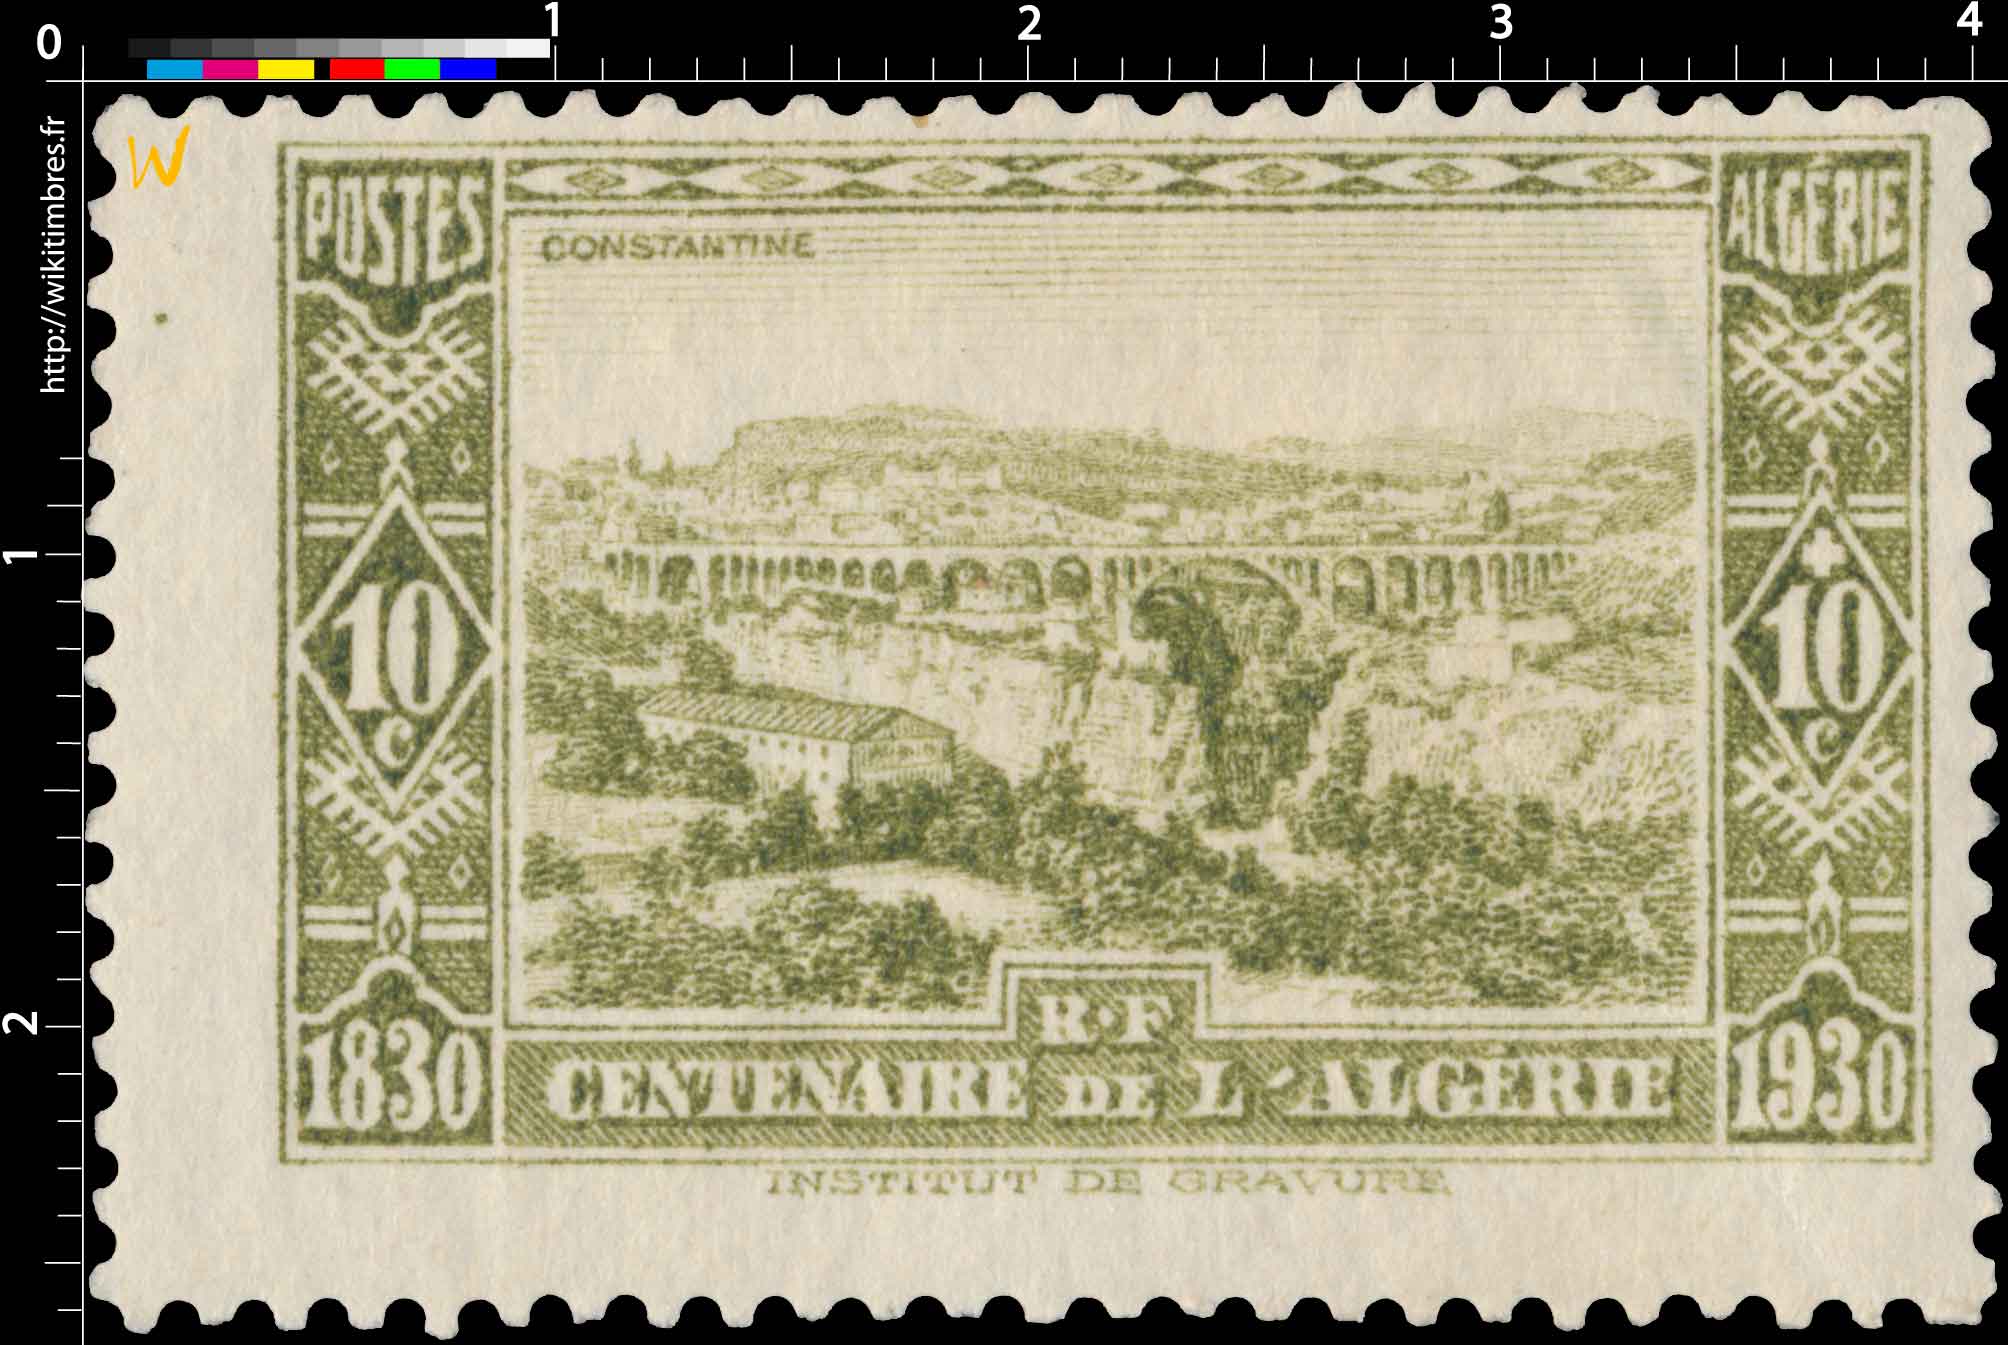 Algérie - Constantine - Centenaire de l'Algérie 1830 - 1930